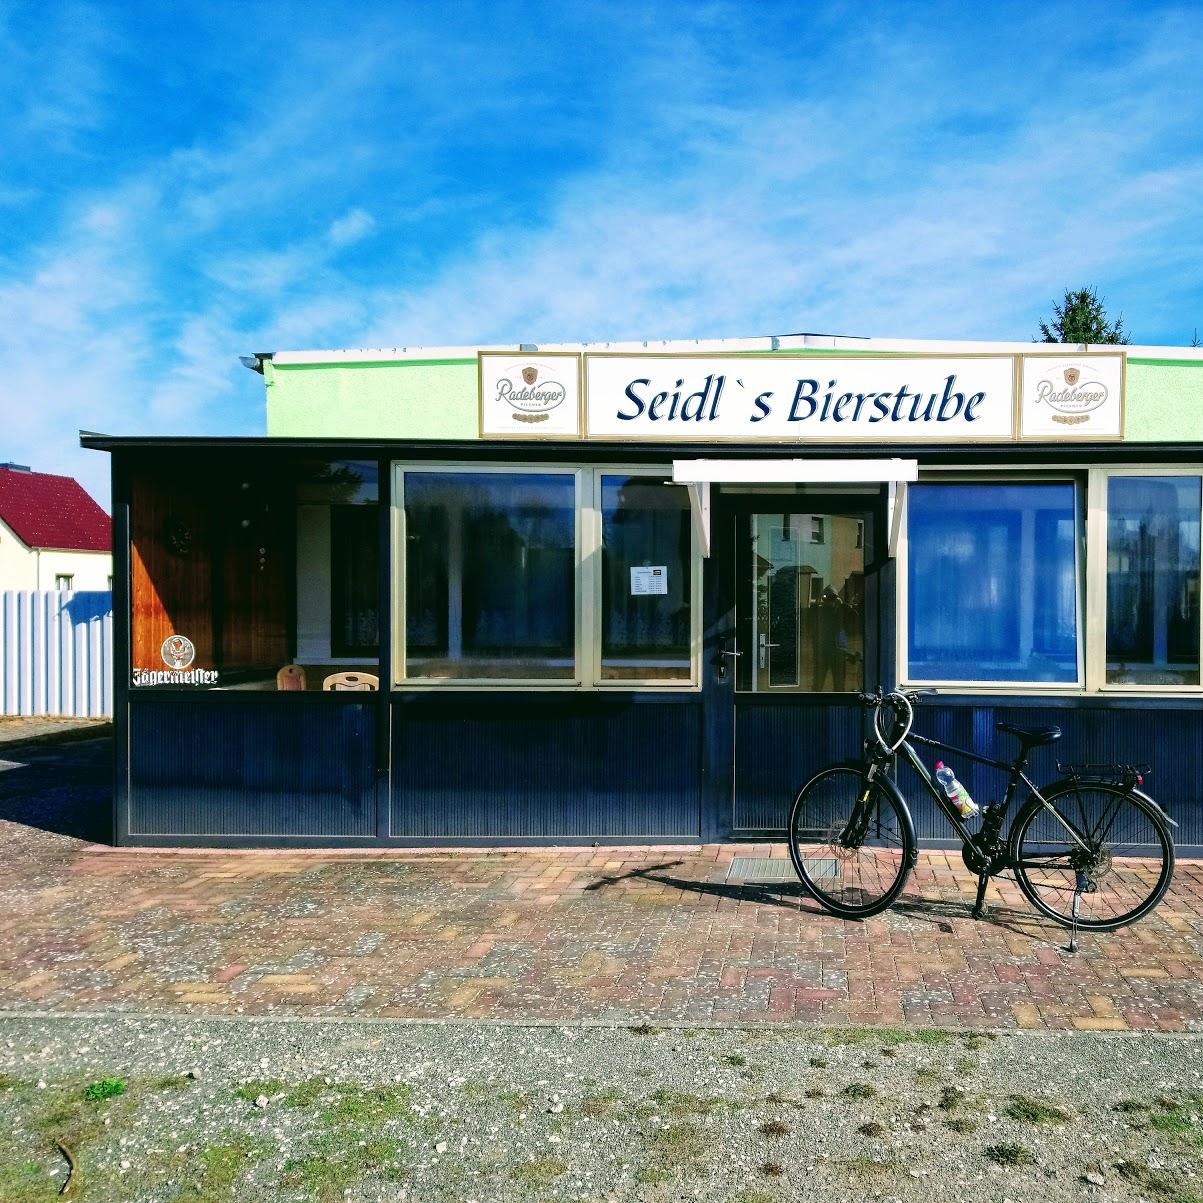 Restaurant "Seidls Bierstube" in Brieskow-Finkenheerd